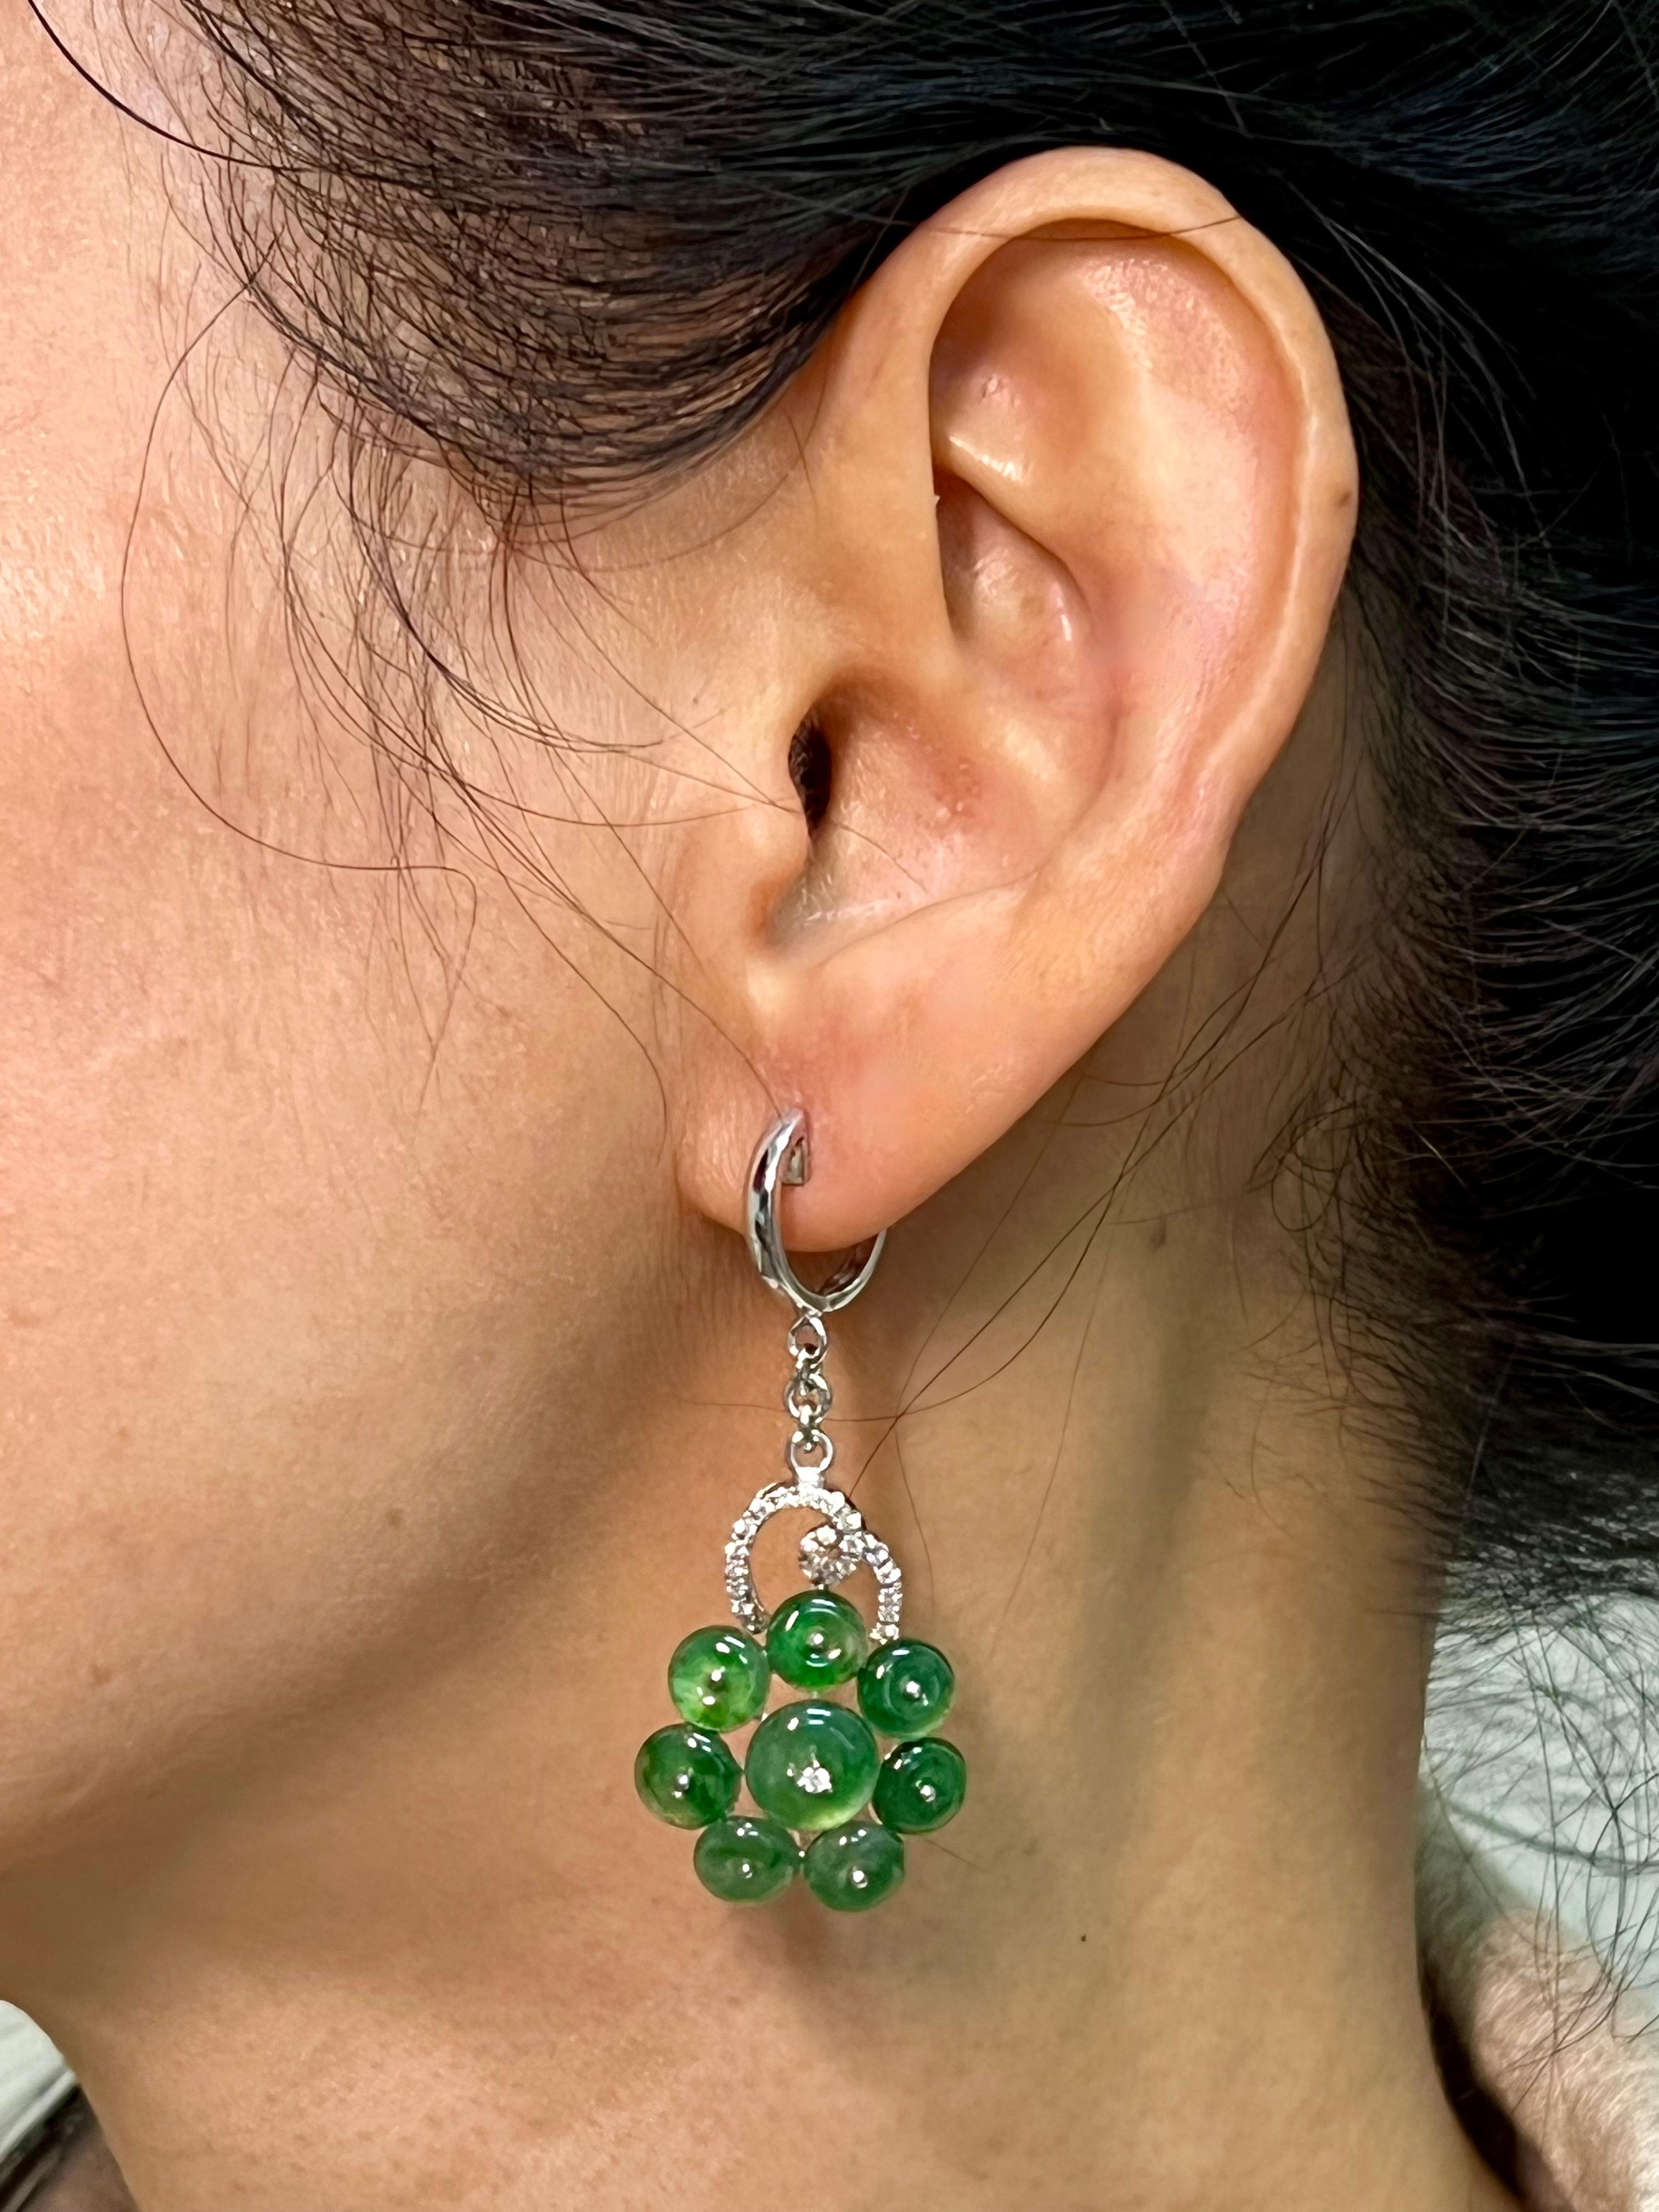 Bitte sehen Sie sich das HD-Video an! Hier ist ein schönes Paar von Cluster Jade Blume Ohrringe. Der Durchmesser des Jadeteils der Ohrringe beträgt jeweils etwa 19 mm. Die Gesamtlänge jedes Ohrrings beträgt etwa 4,7 cm. Die Ohrringe sind in 18 Karat